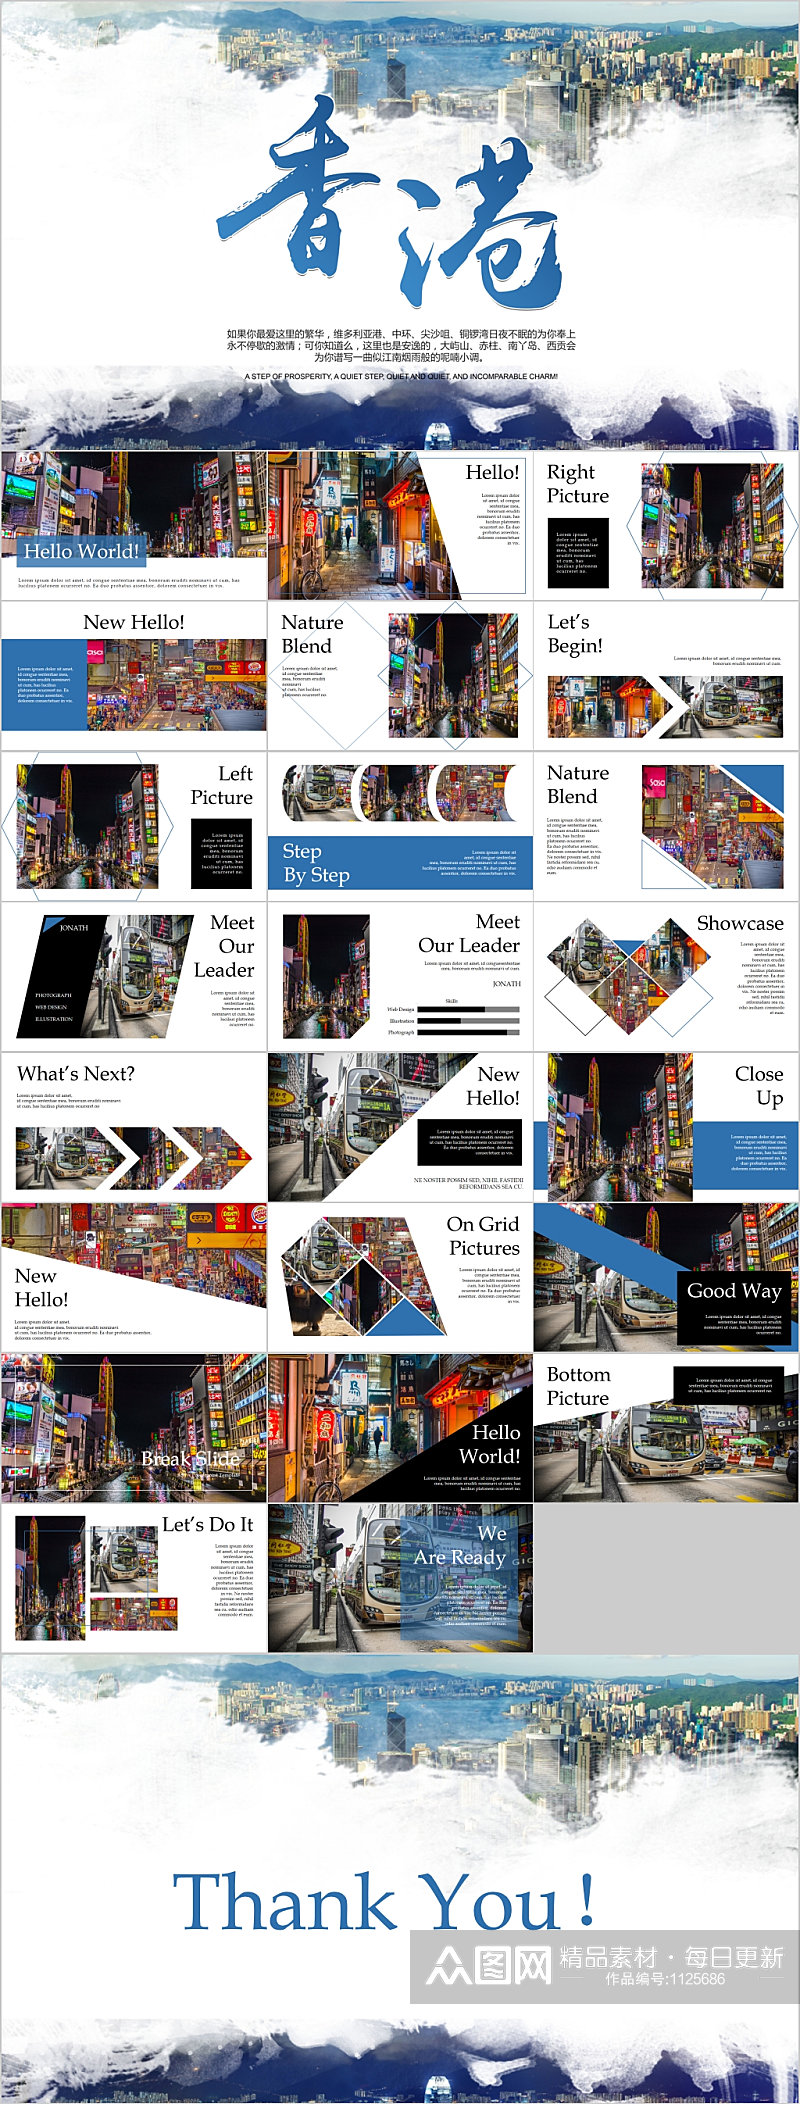 香港旅游文化宣传PPT模板素材